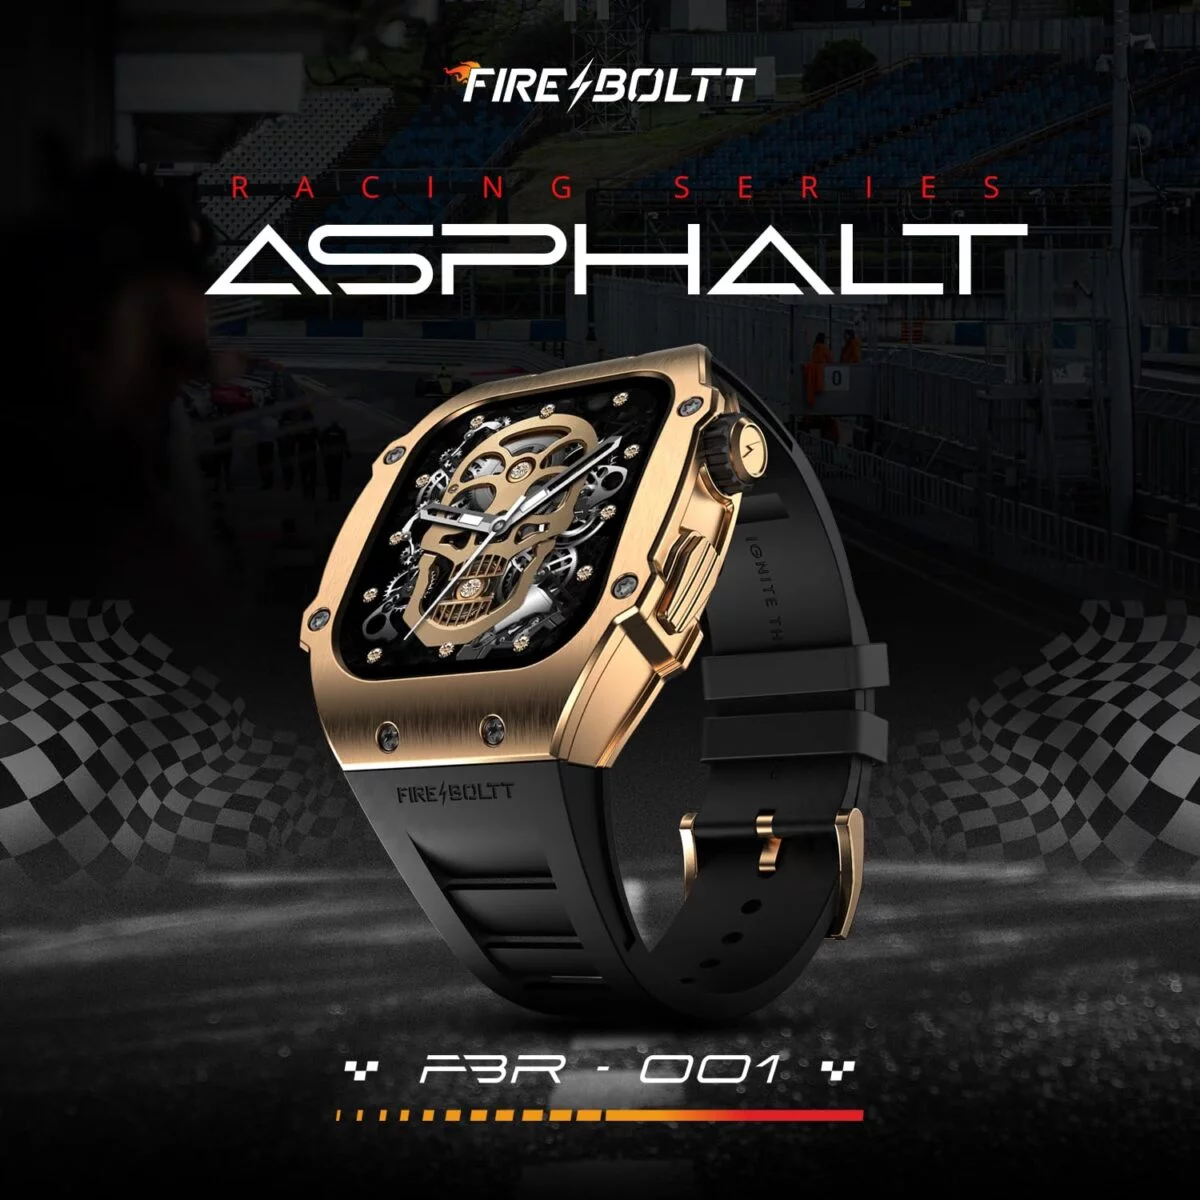 Fire boltt asphalt racing edition smart watch 4 fire-boltt asphalt racing edition smart watch